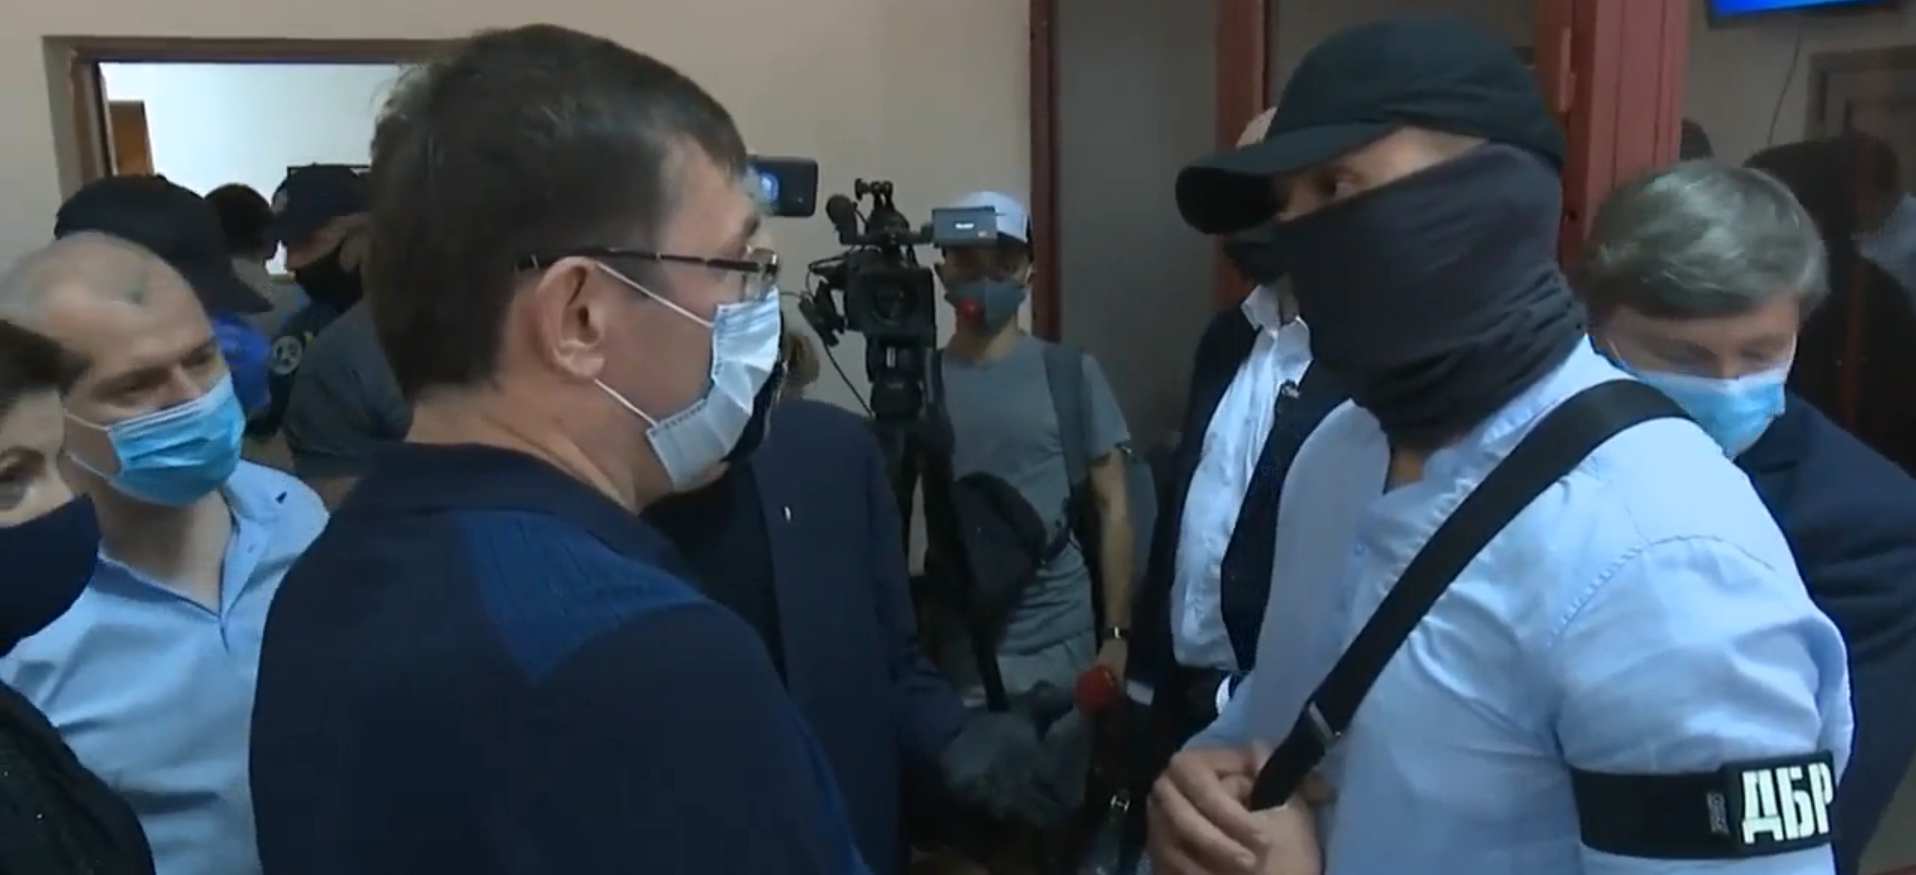 Дело Порошенко: во время суда Луценко выяснял отношения с сотрудником ГБР